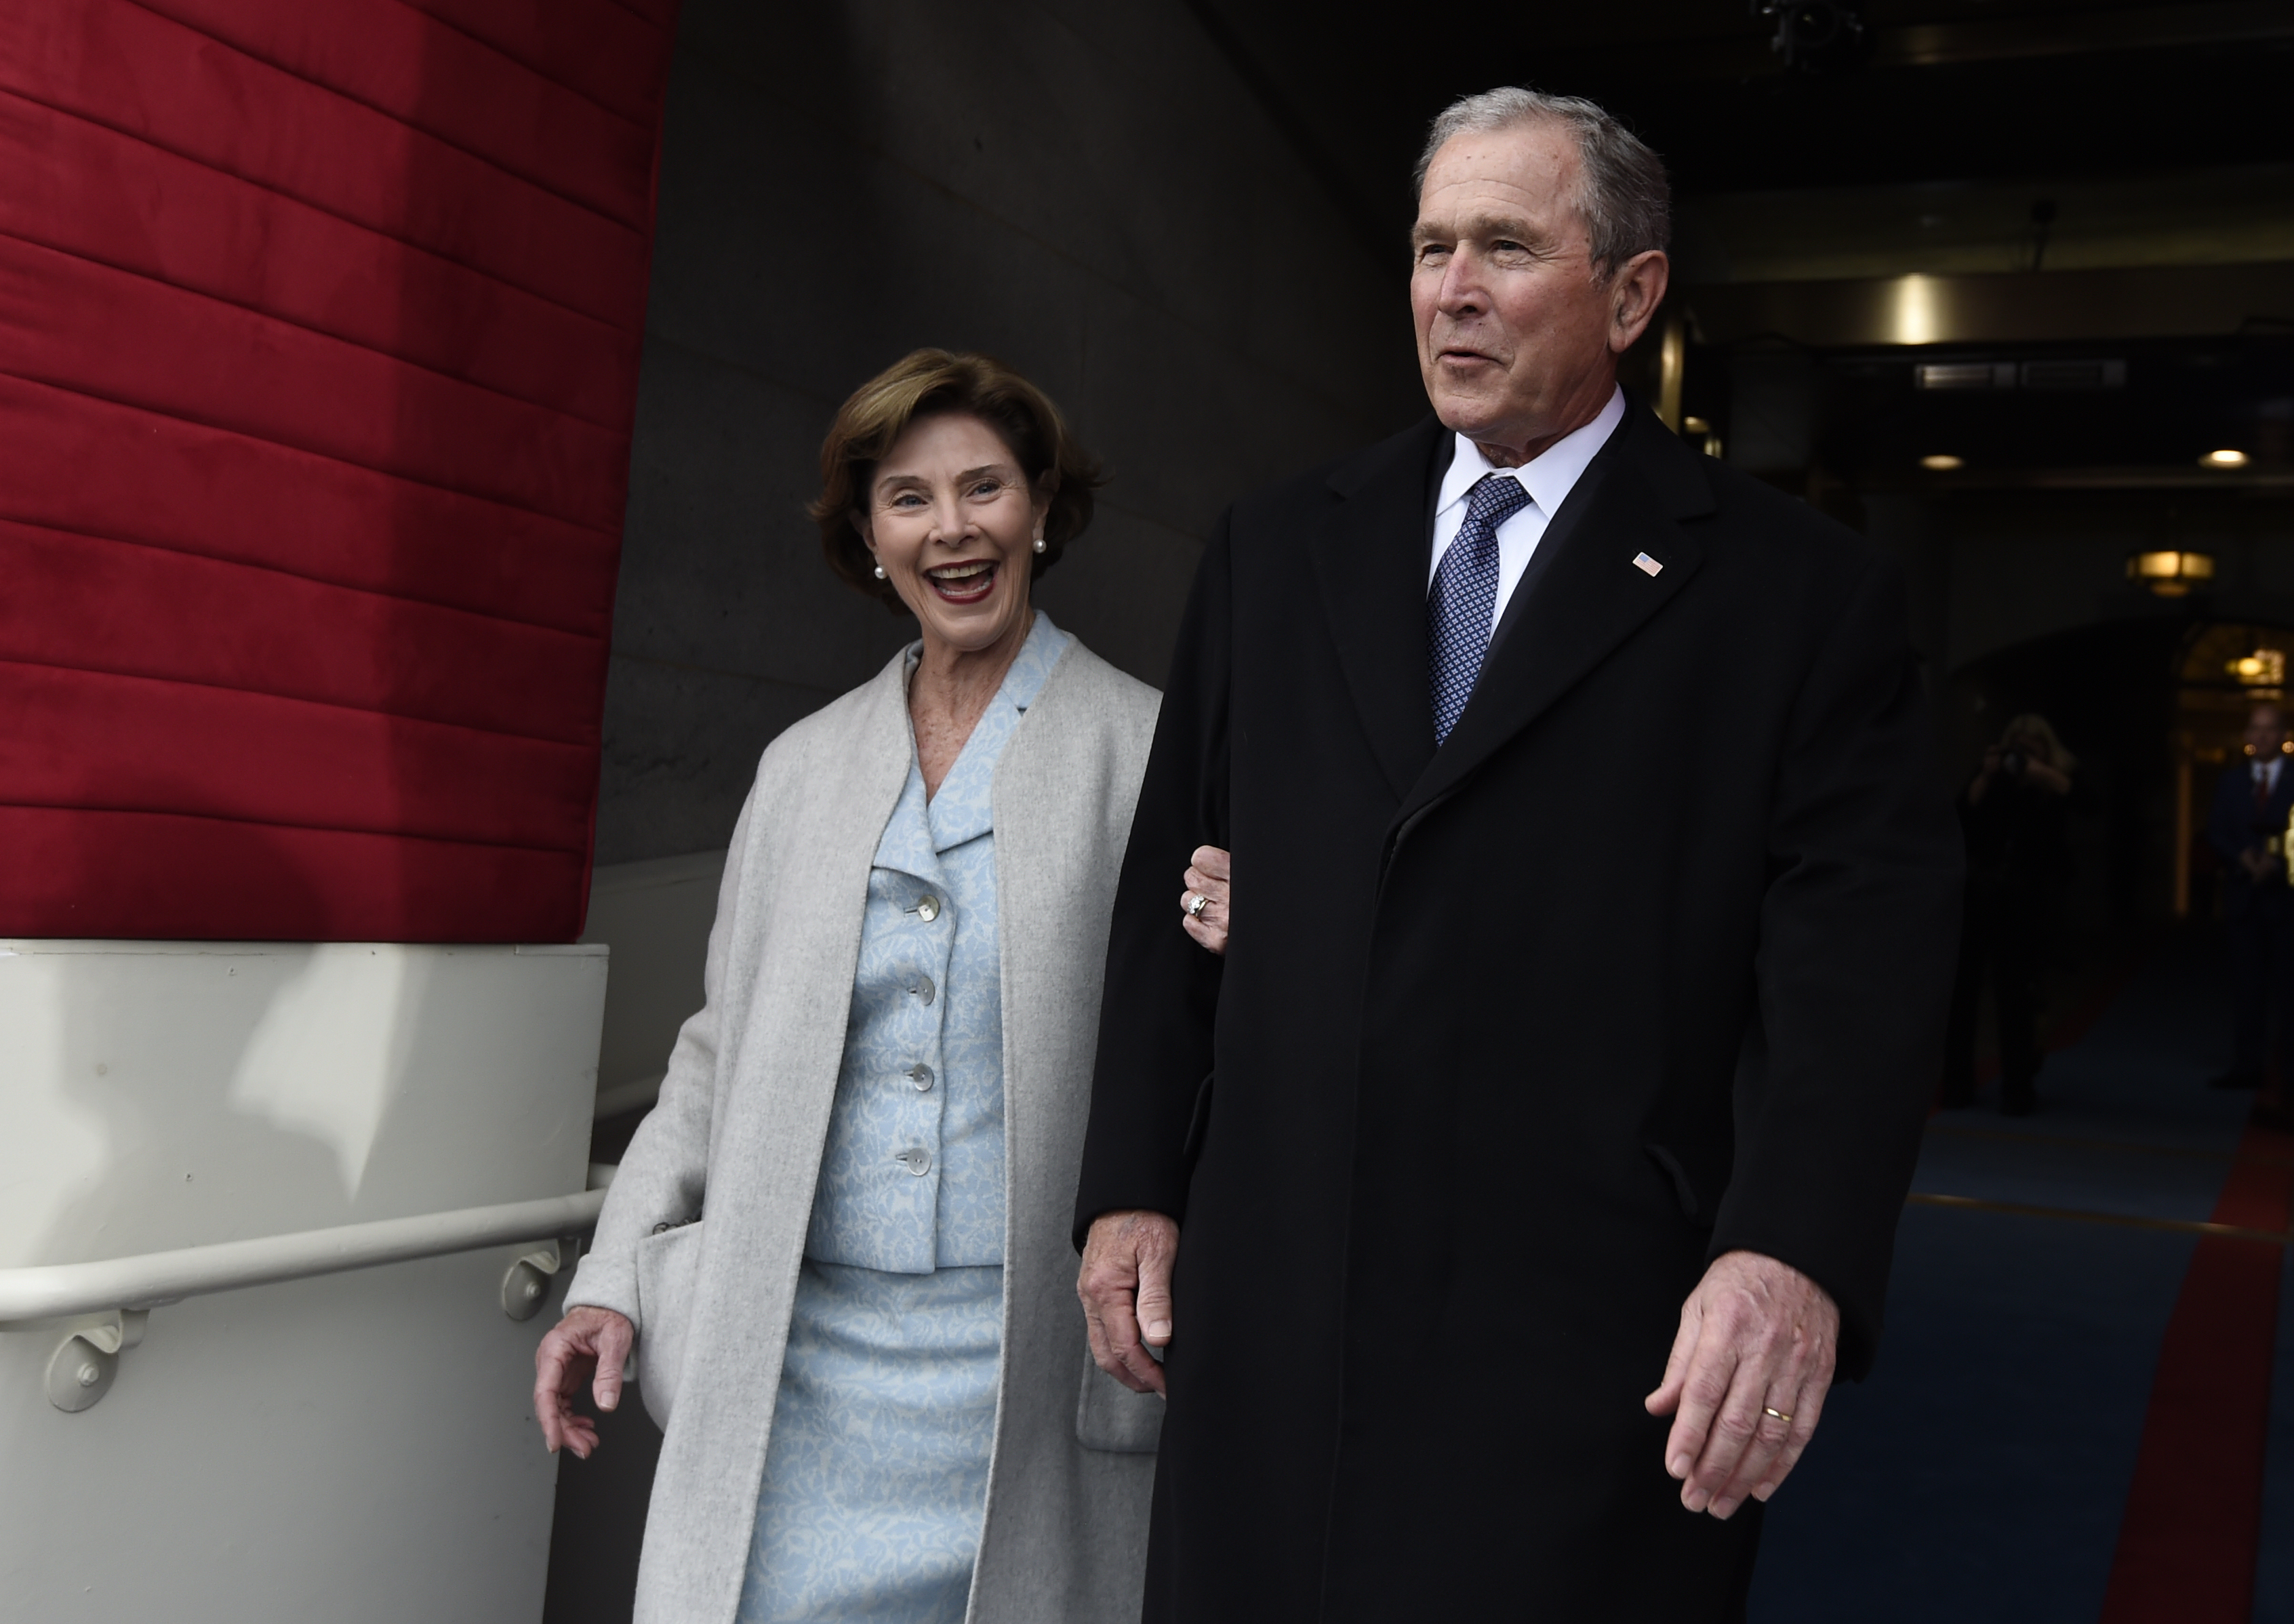 Хилари Клинтън и бившият президент на САЩ Бил Клинтън също пристигнаха на Капитолия за церемонията. ​Двамата се присъединиха към други бивши президенти и техните съпруги, включително Джордж и Лора Буш.